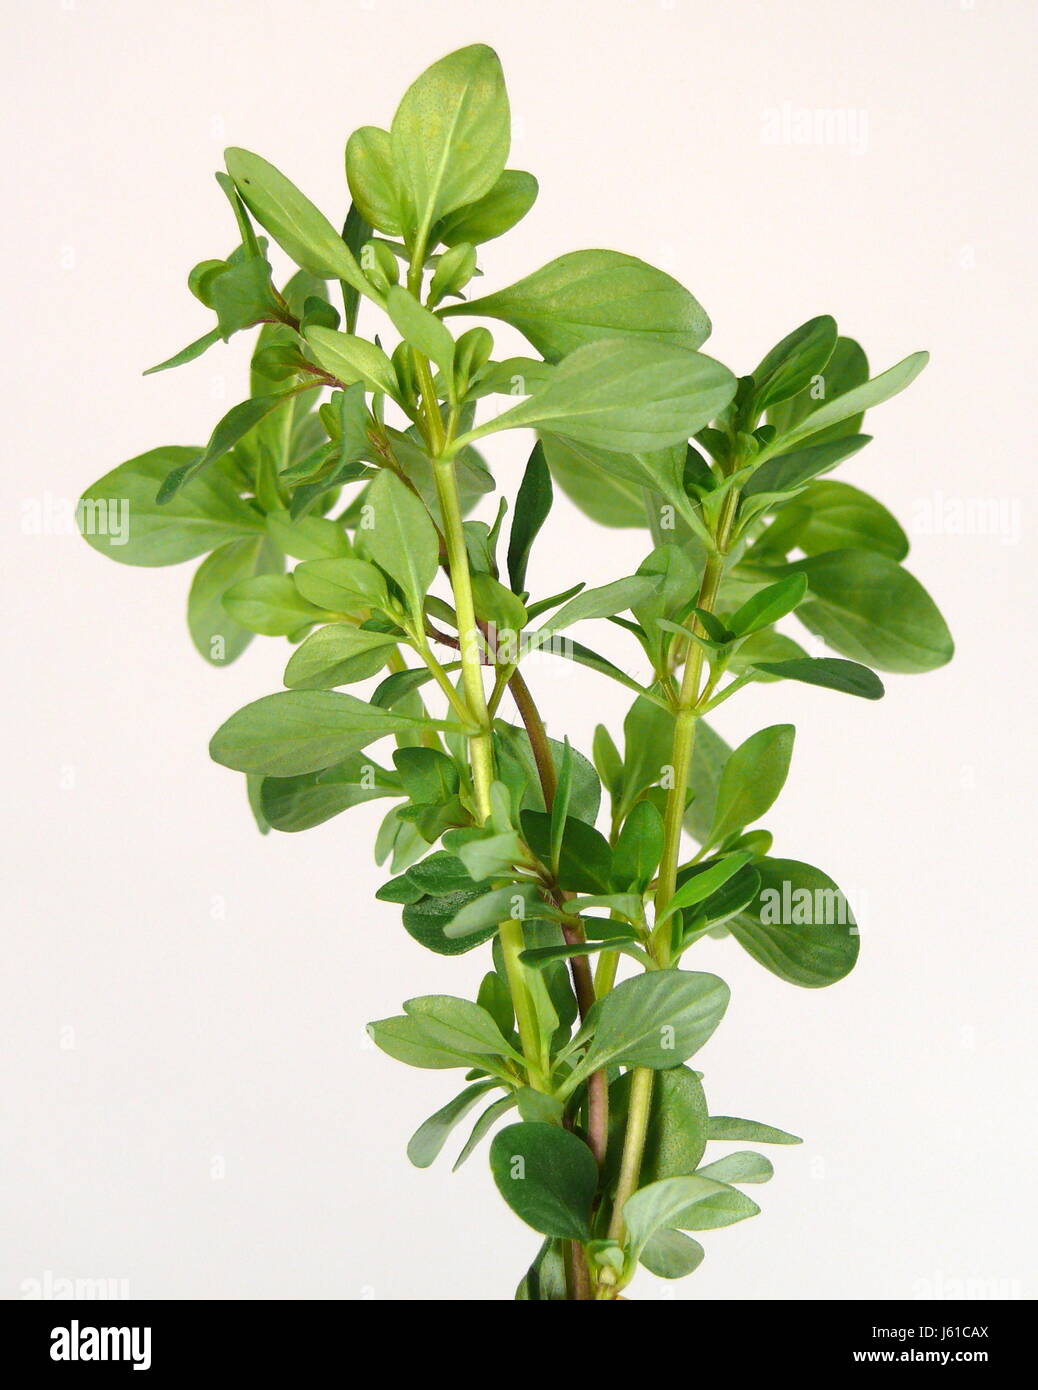 Gewürz Heilpflanze Thymian frische Kräuter Gewürz Strauch Kraut Heilpflanze  Stockfotografie - Alamy